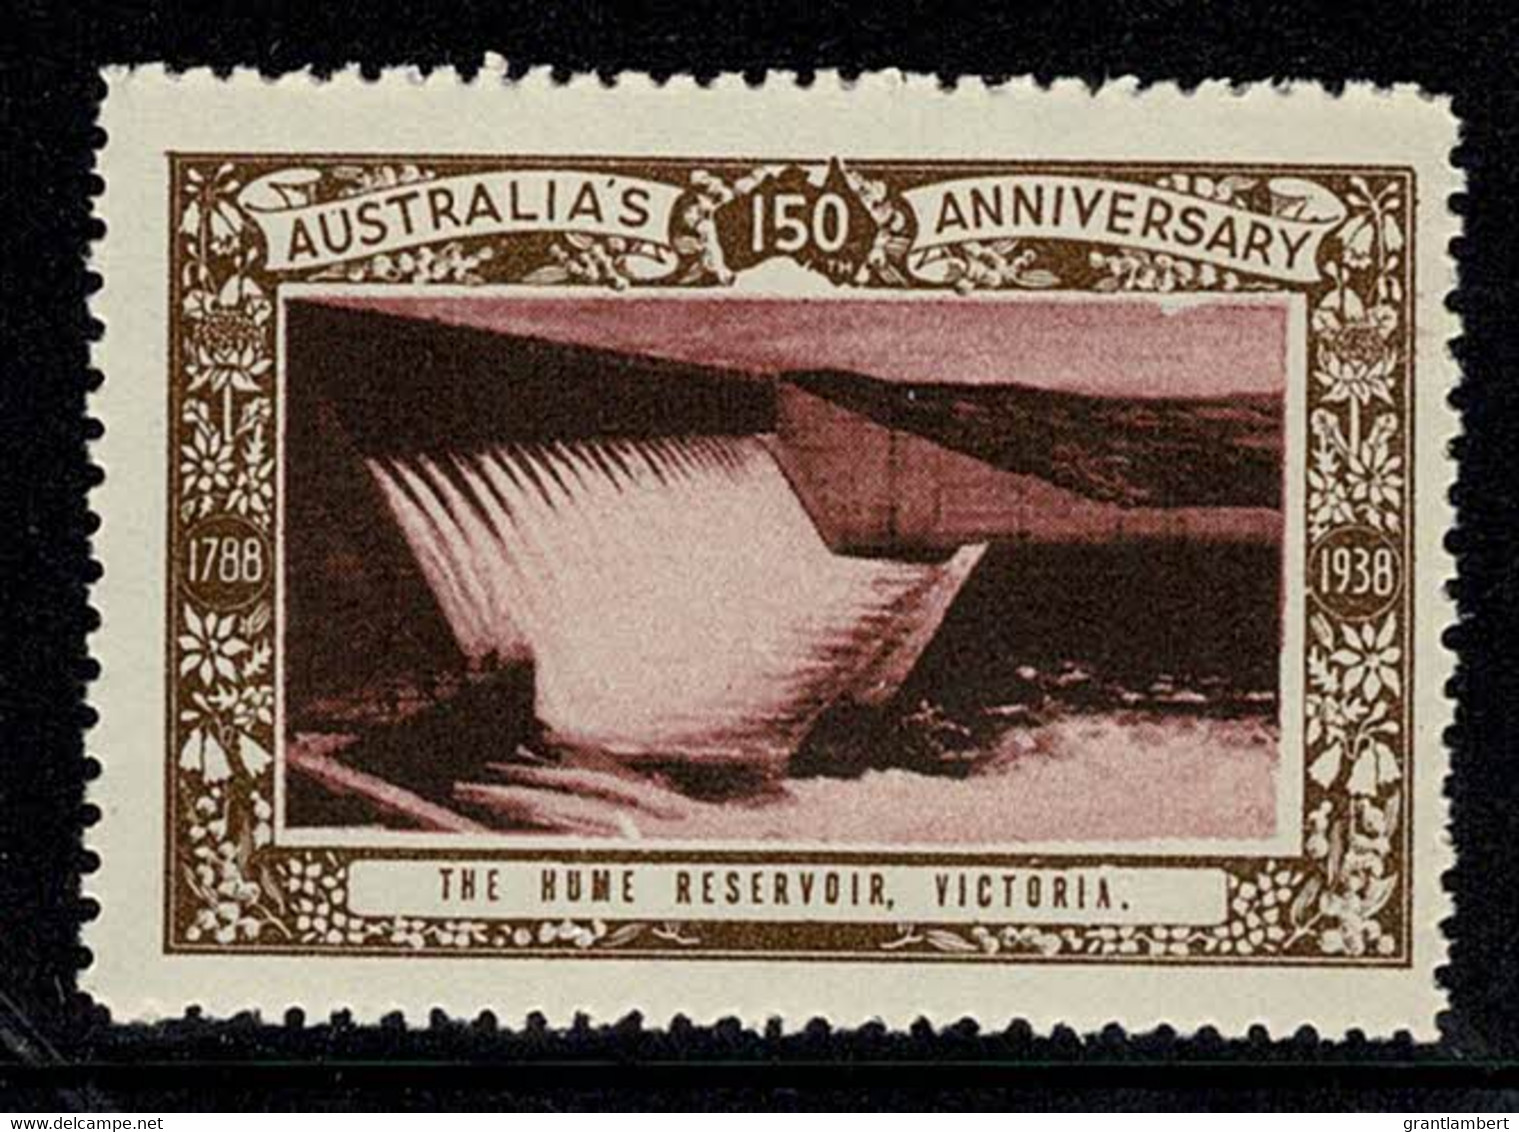 Australia 1938 The Hume Reservoir, Victoria - NSW 150th Anniversary Cinderella MNH - Werbemarken, Vignetten